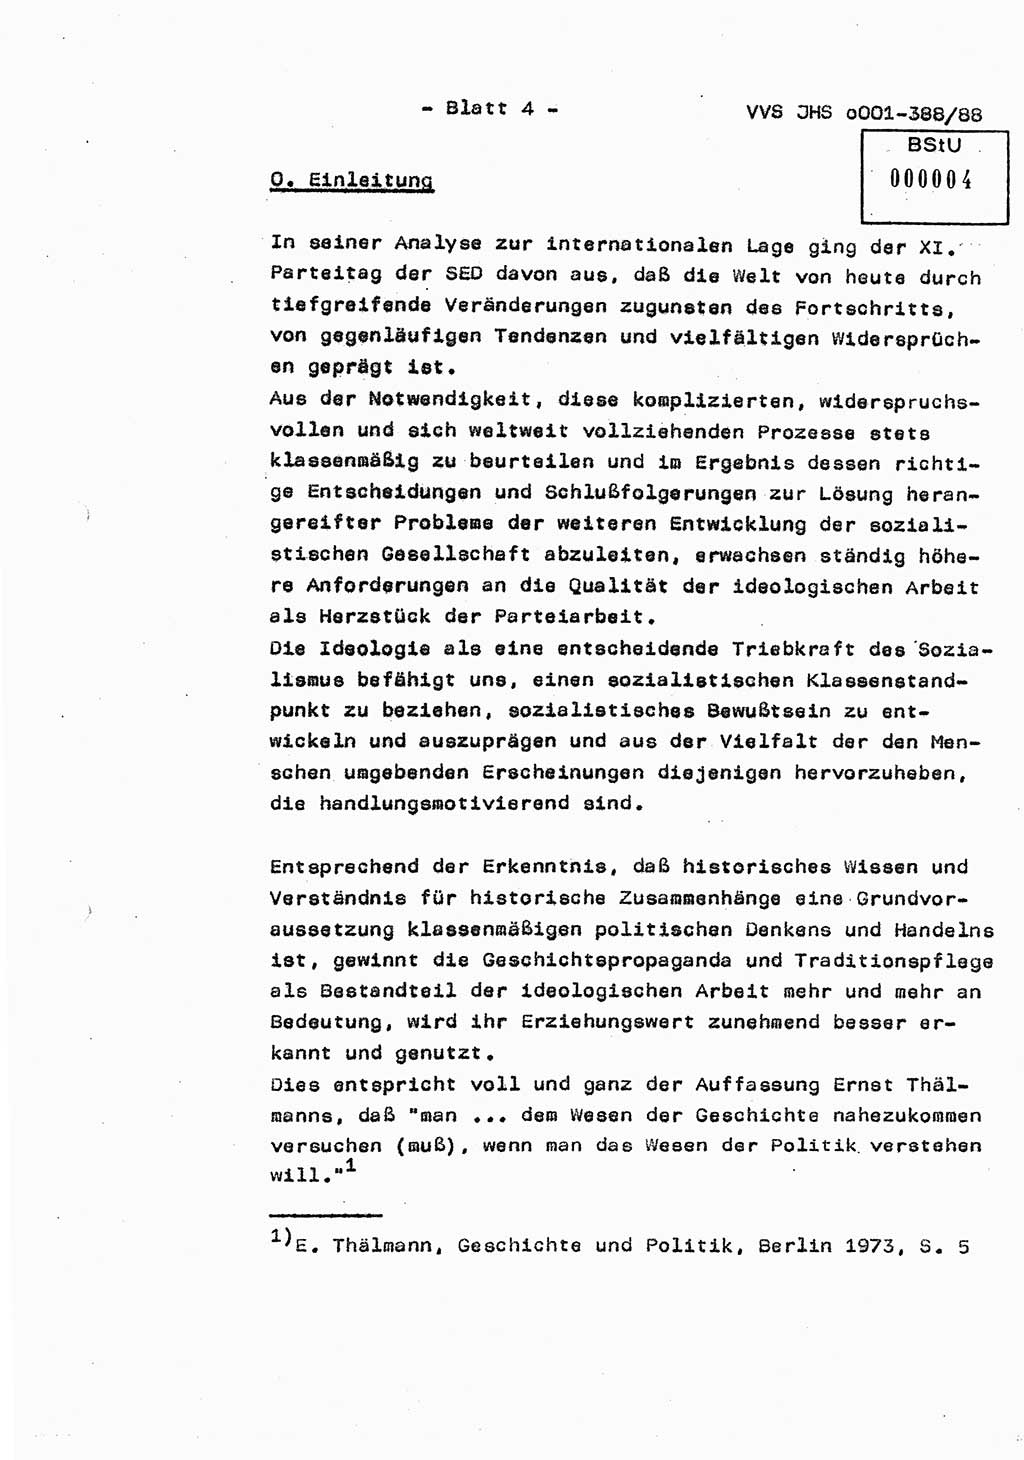 Diplomarbeit Hauptmann Heinz Brixel (Abt. ⅩⅣ), Ministerium für Staatssicherheit (MfS) [Deutsche Demokratische Republik (DDR)], Juristische Hochschule (JHS), Vertrauliche Verschlußsache (VVS) o001-388/88, Potsdam 1988, Blatt 4 (Dipl.-Arb. MfS DDR JHS VVS o001-388/88 1988, Bl. 4)